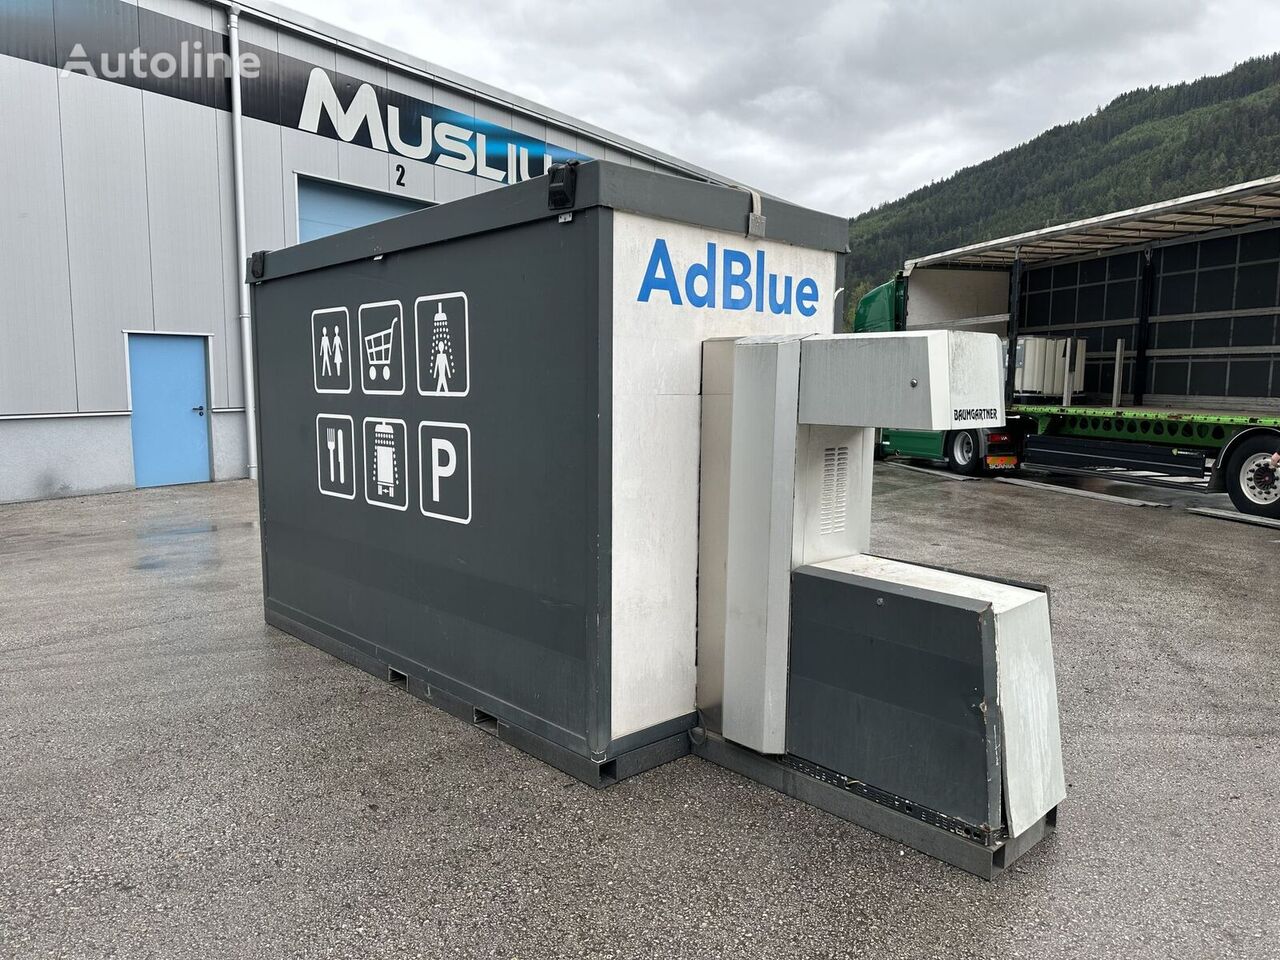 Adblue Tankstelle  rezervoar za skladistenje goriva